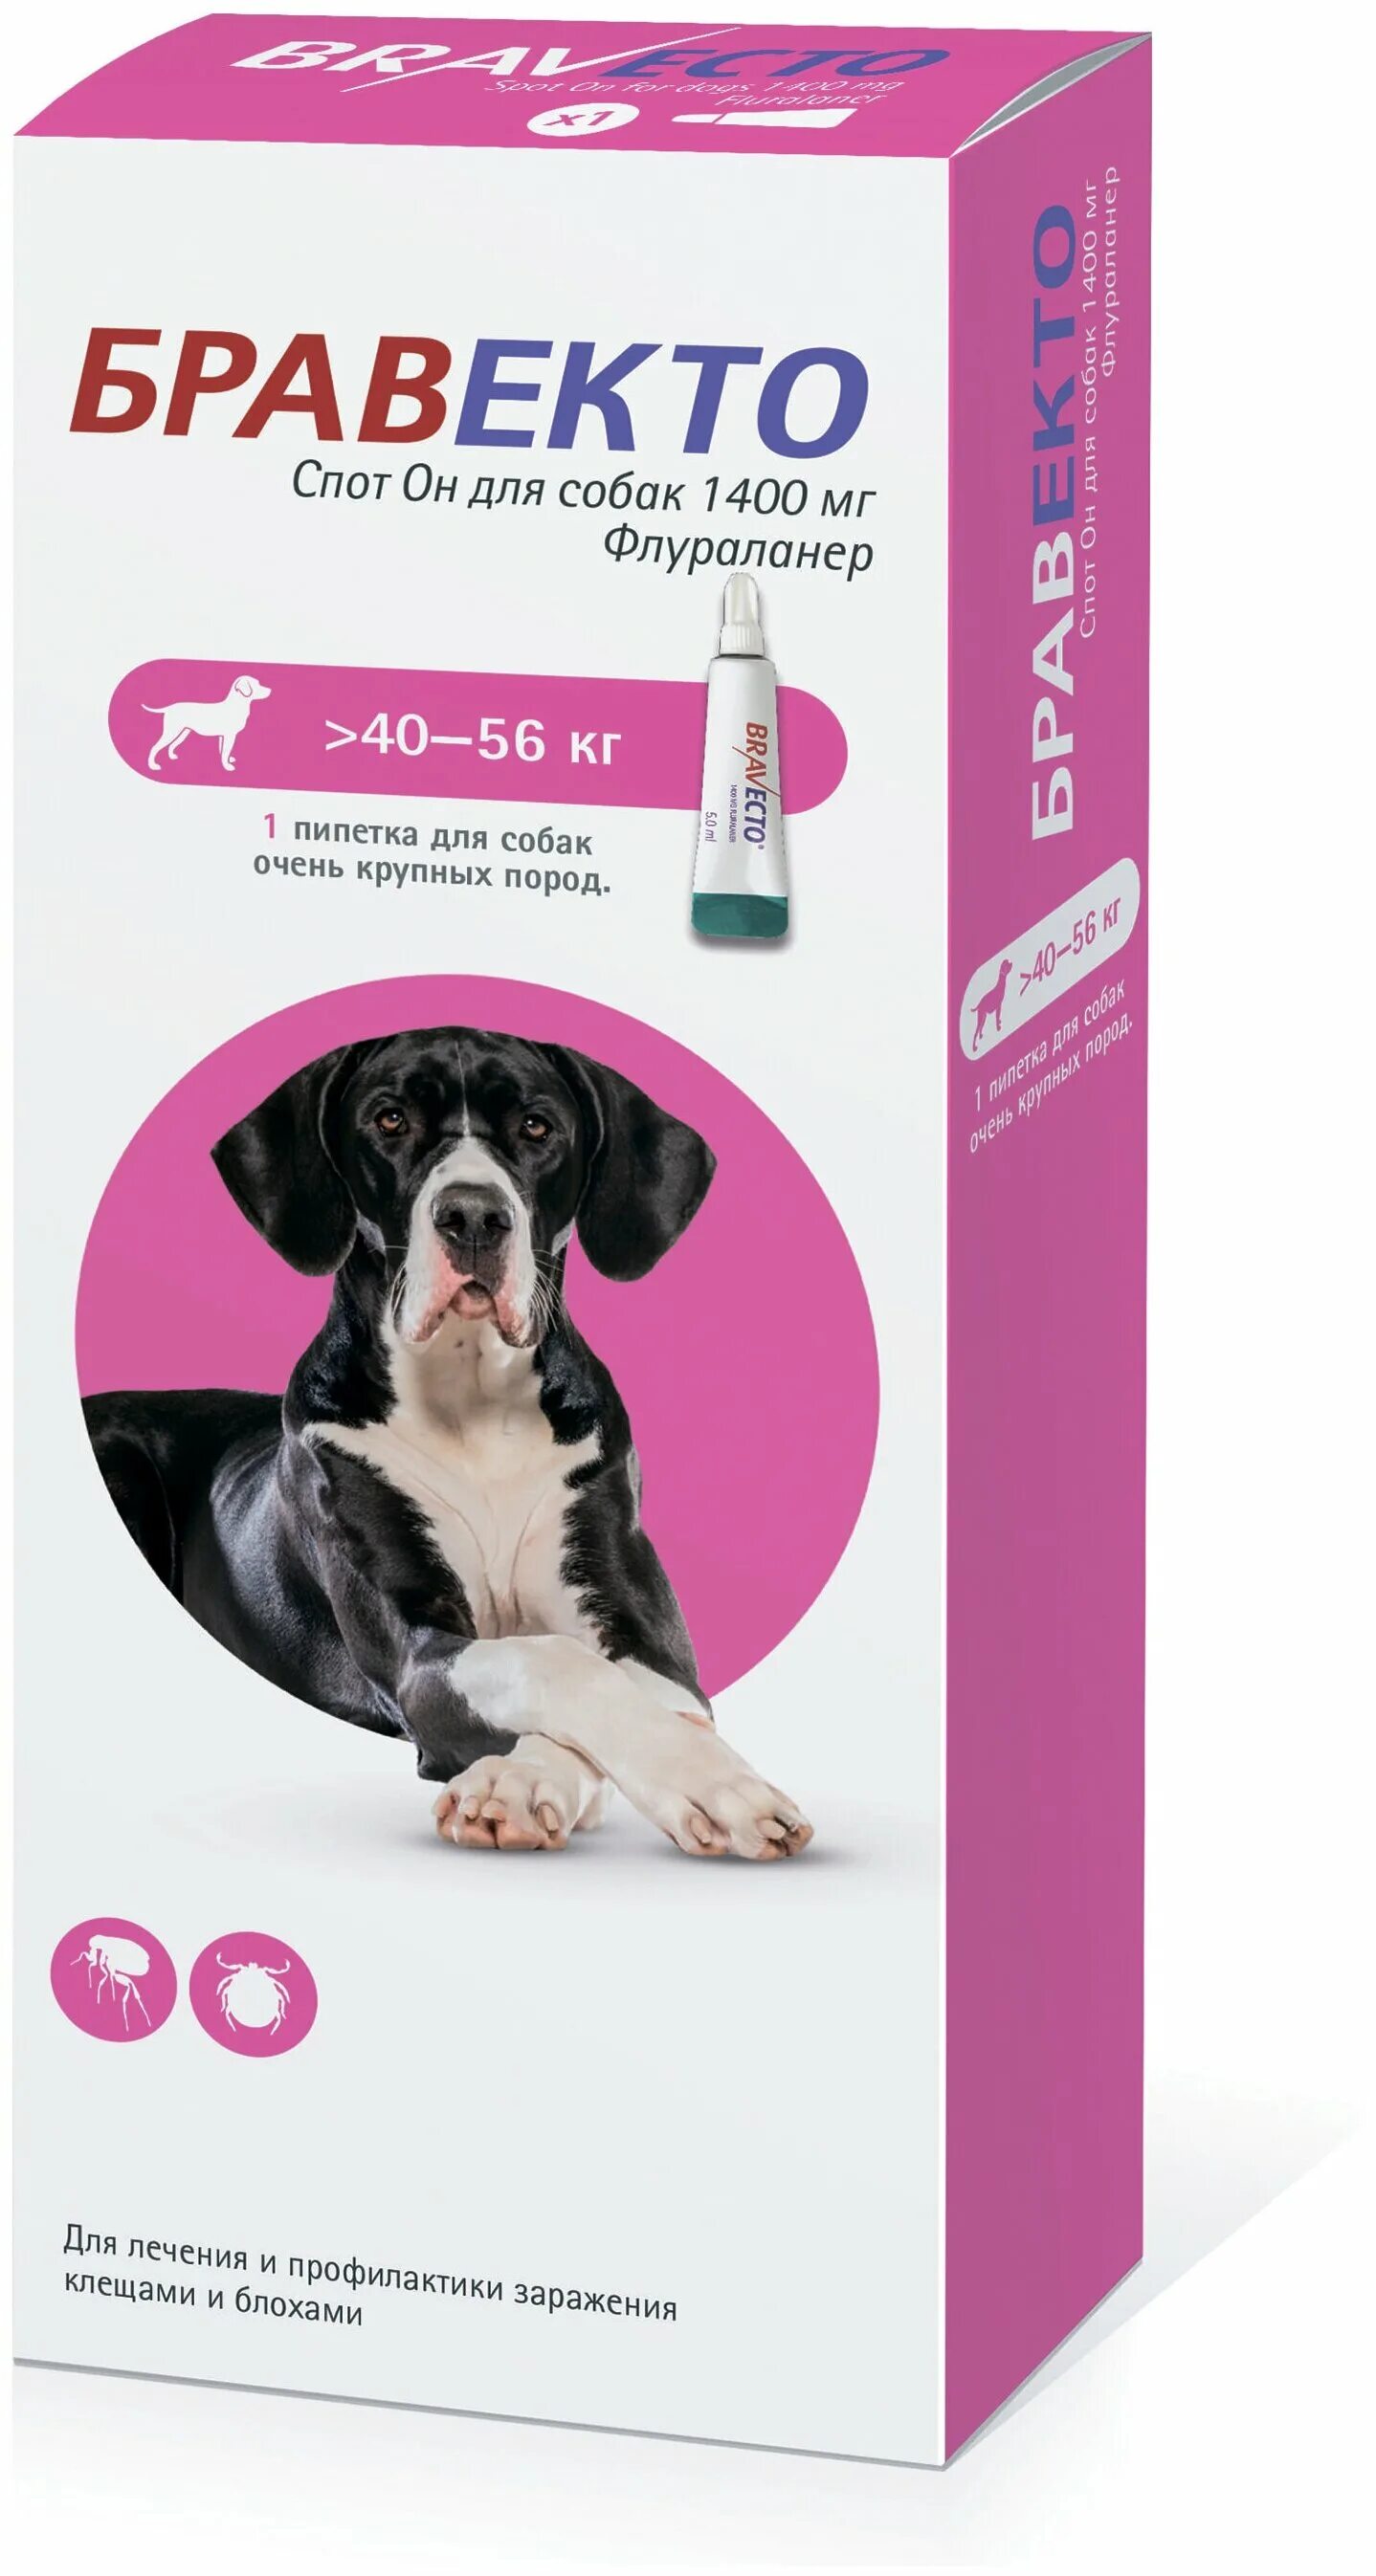 Бравекто спот он для собак (1400 мг) 40-56 кг. Бравекто (MSD animal Health) капли от блох и клещей спот он для собак 4,5-10 кг. Бравекто для собак 10-20 капли. Бравекто для собак 1400 мг 40-56. Бровекта для собак купить в москве